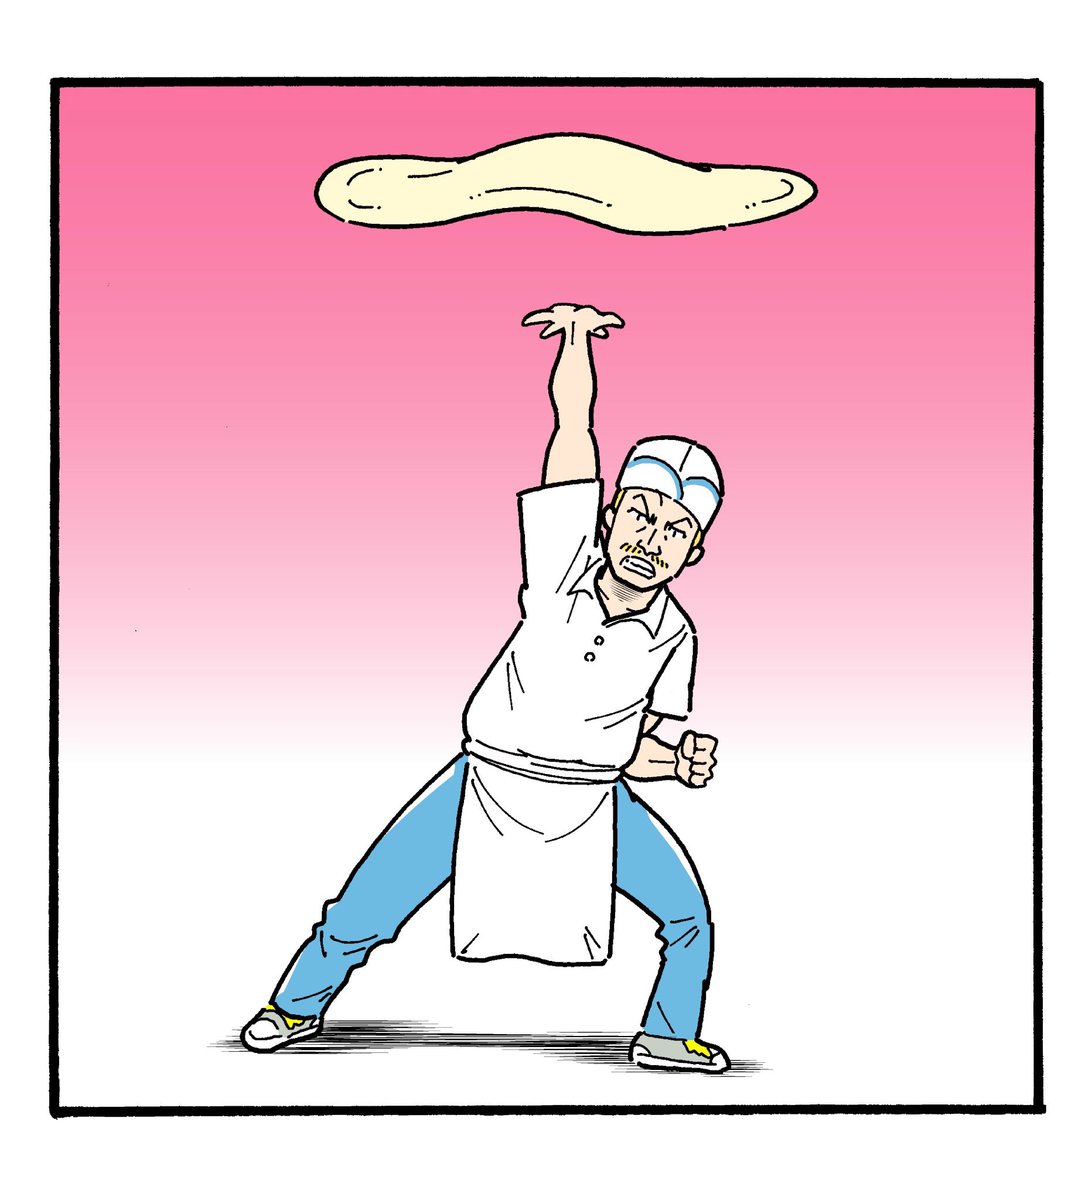 漫画に影響を受けた人シリーズ
「ドラゴンボールが大好きなピザ職人」 